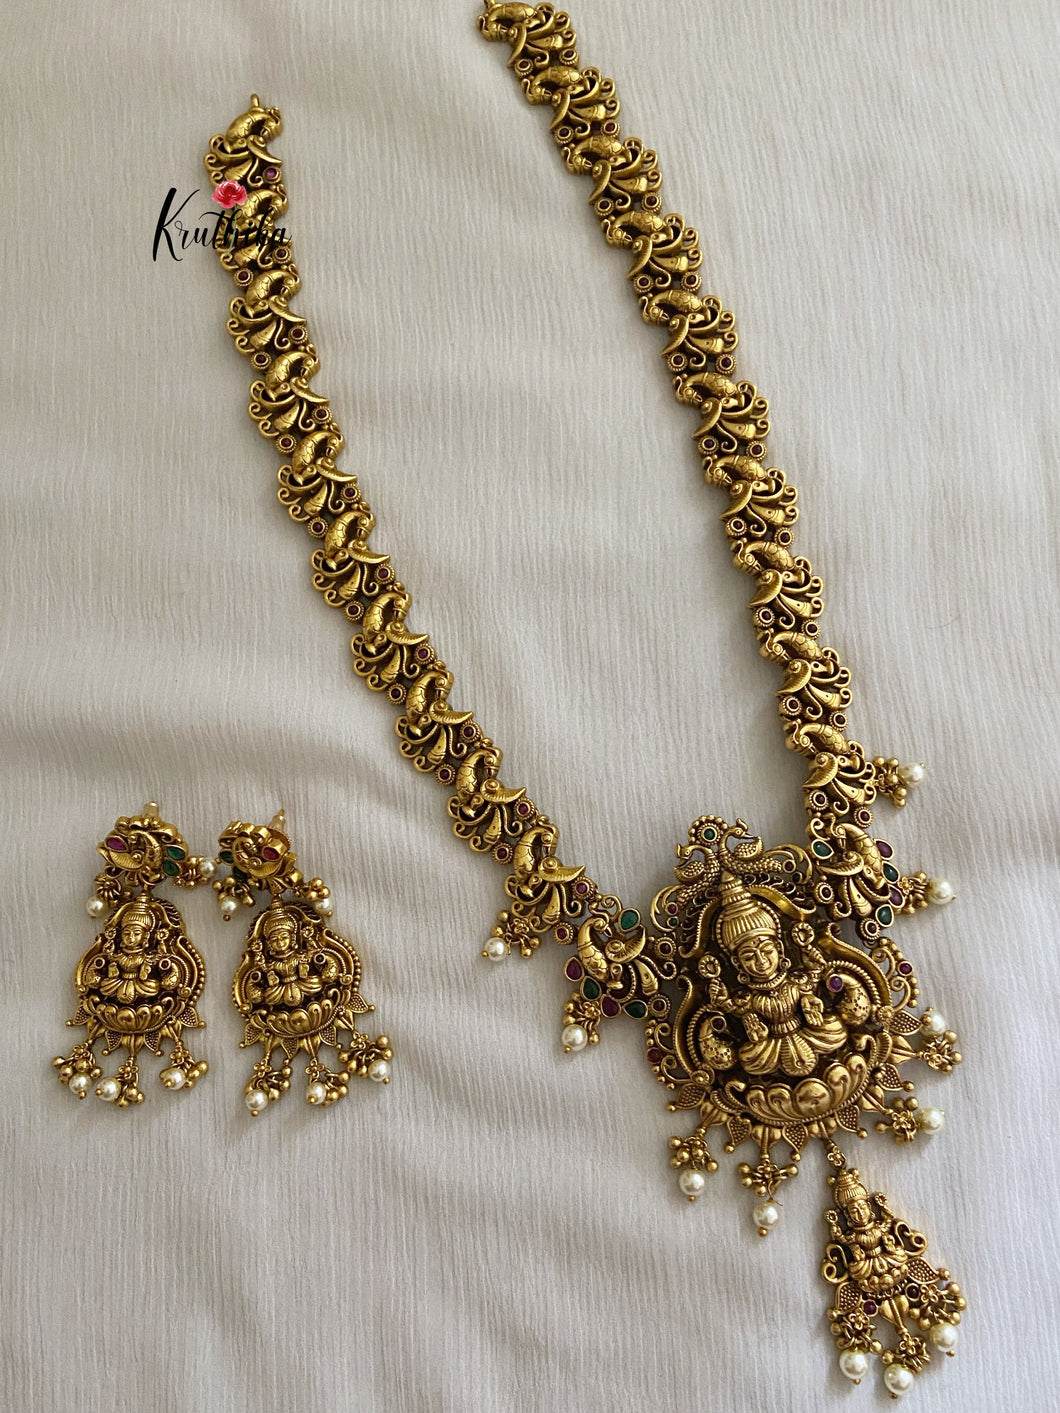 Premium antique finish Nagas Lakshmi Devi haaram LH150